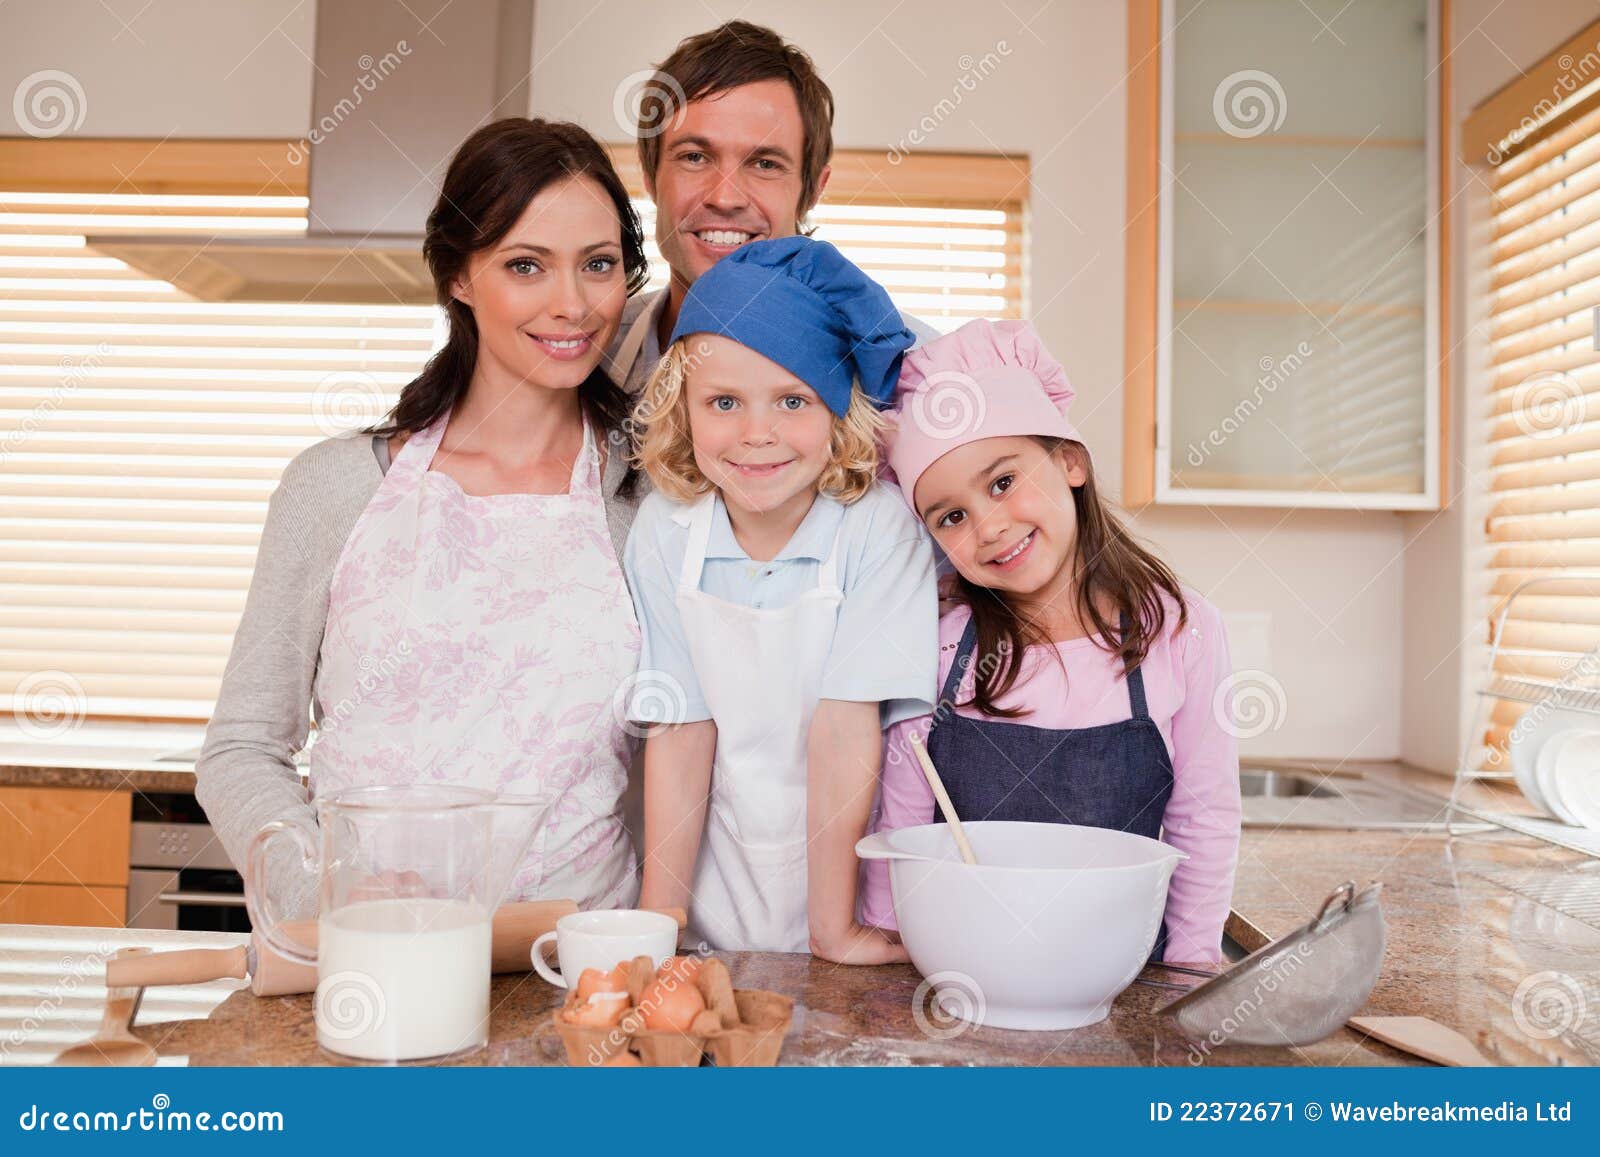 Family baking together stock image. Image of baking, girls - 22372671